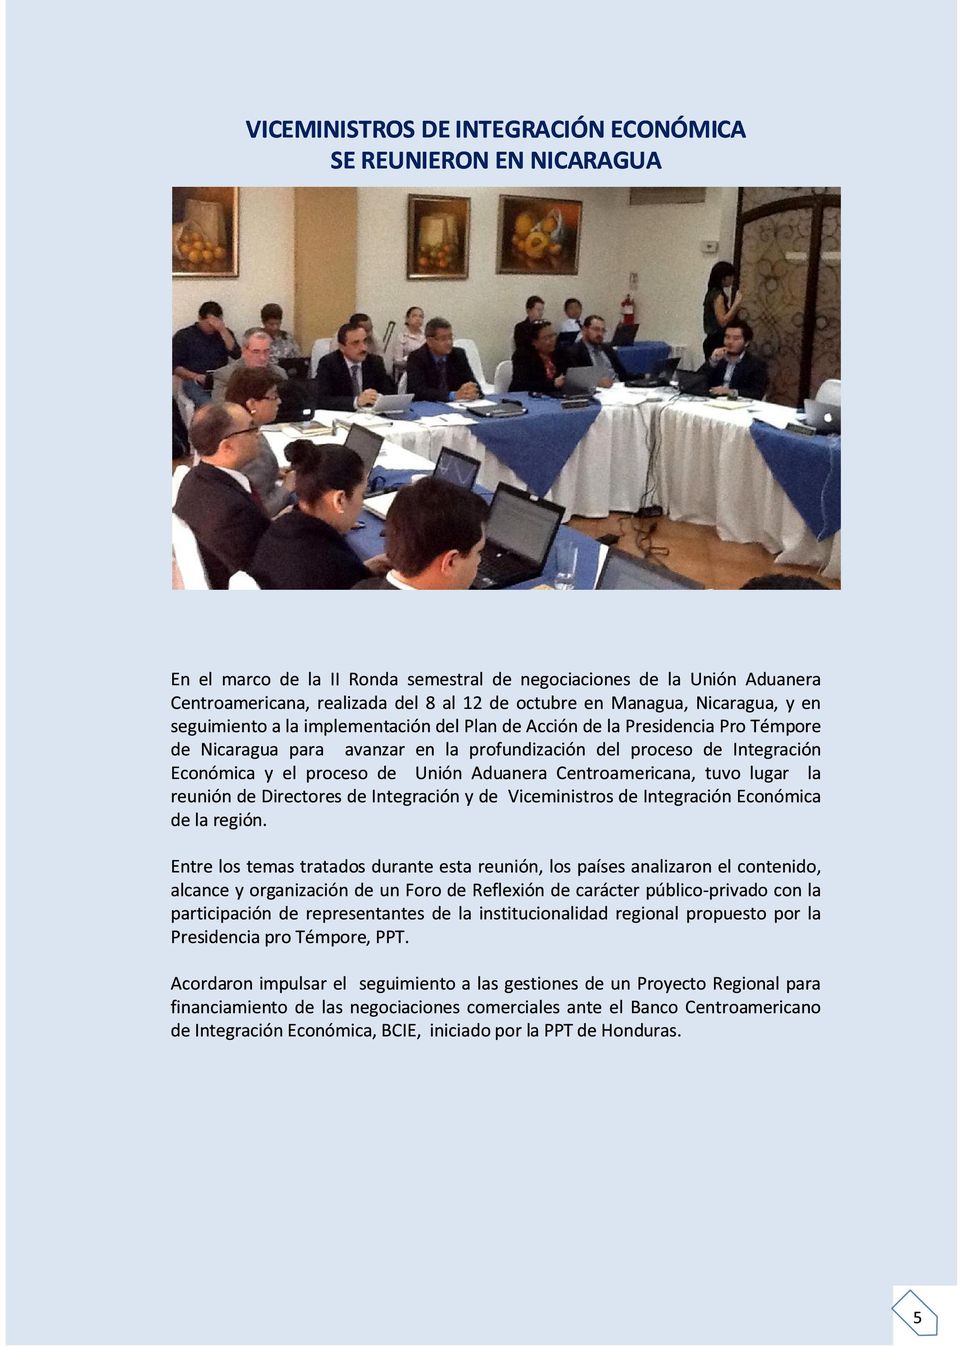 proceso de Unión Aduanera Centroamericana, tuvo lugar la reunión de Directores de Integración y de Viceministros de Integración Económica de la región.